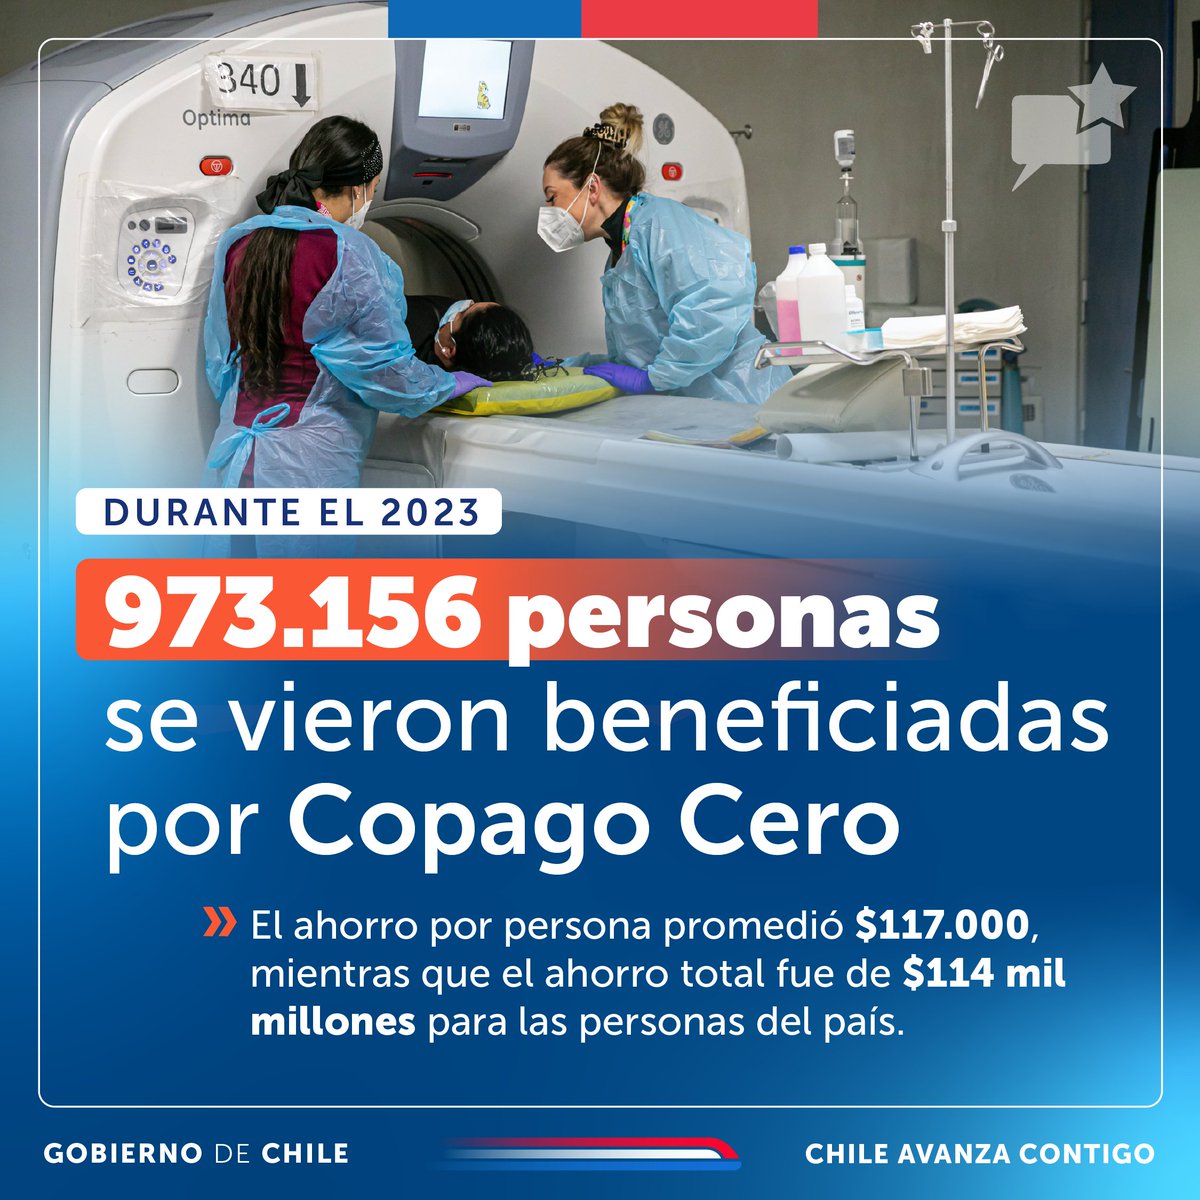 ¡Durante el 2023, más de 970 mil personas se beneficiaron del #CopagoCero! Chile avanza fortaleciendo la salud pública y generando un ahorro importante para las familias.